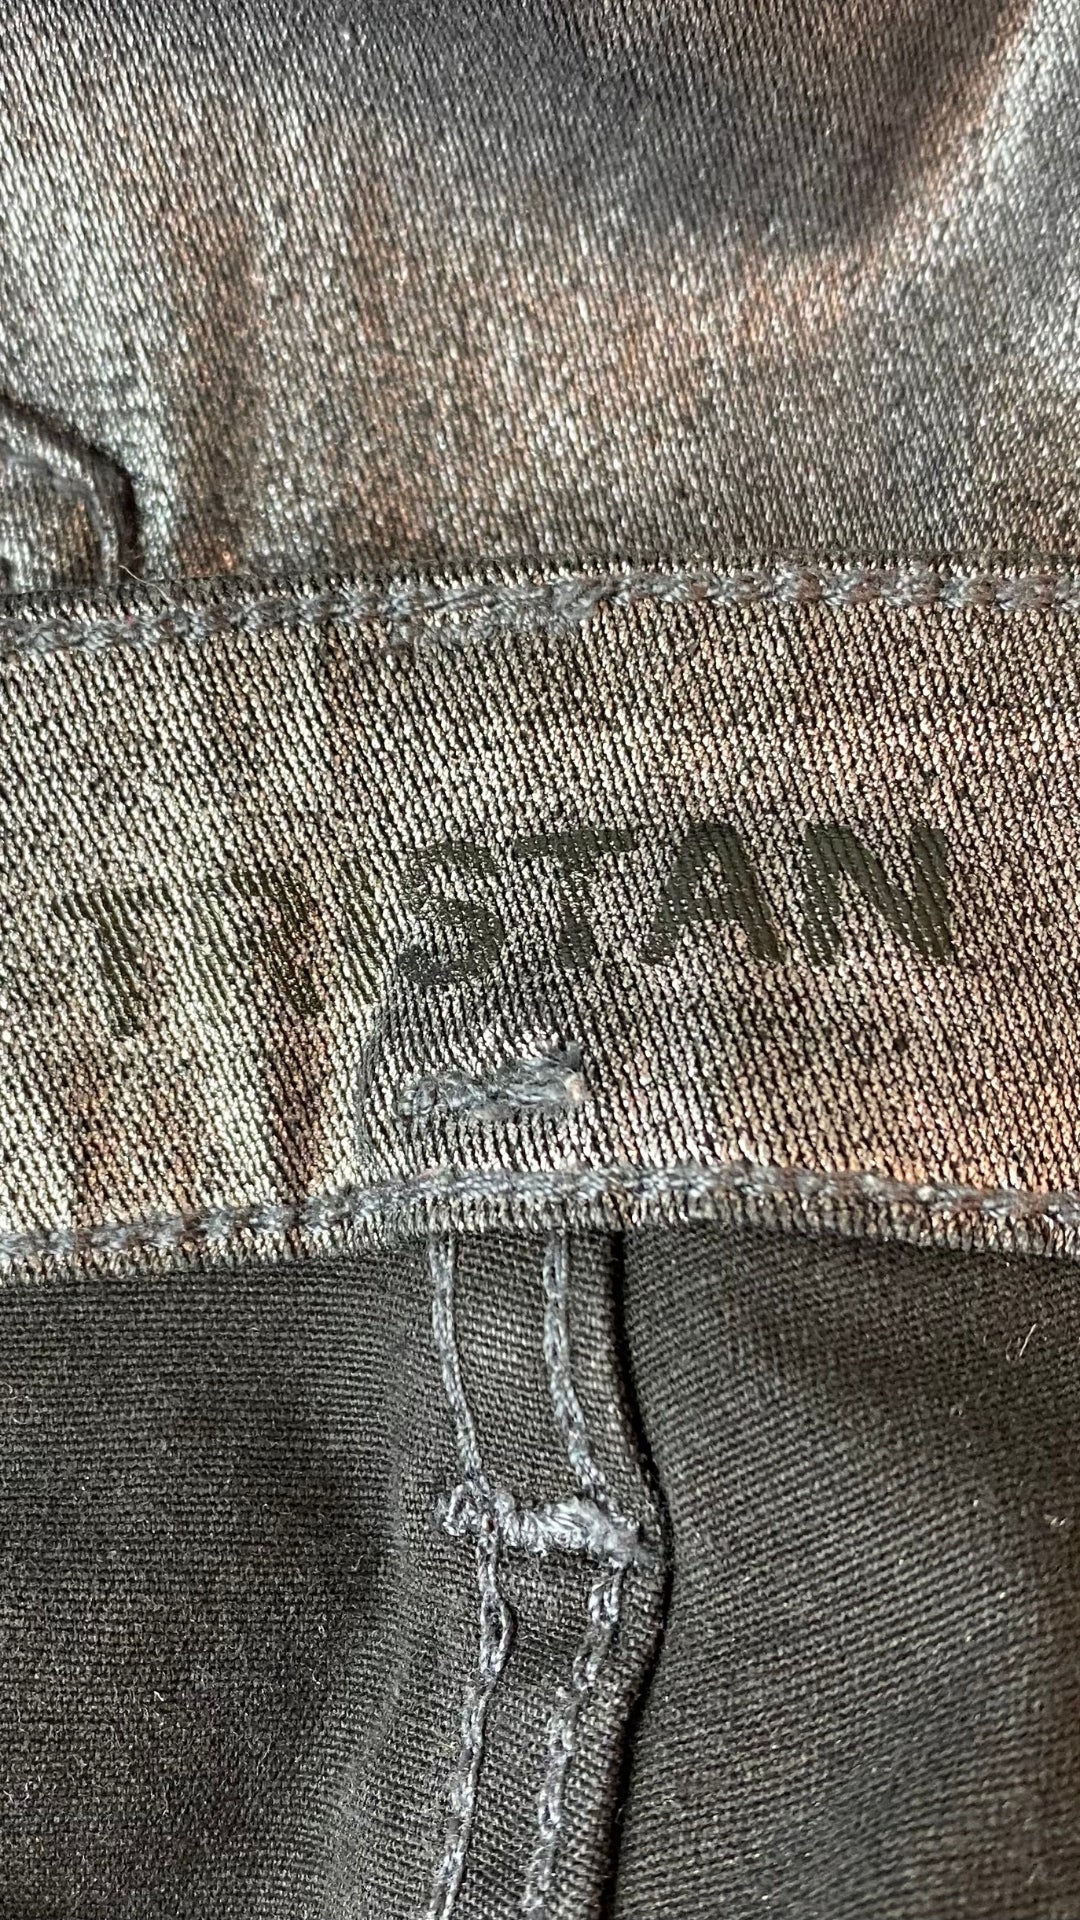 Pantalon Tristan festif et argenté, vue de la marque.